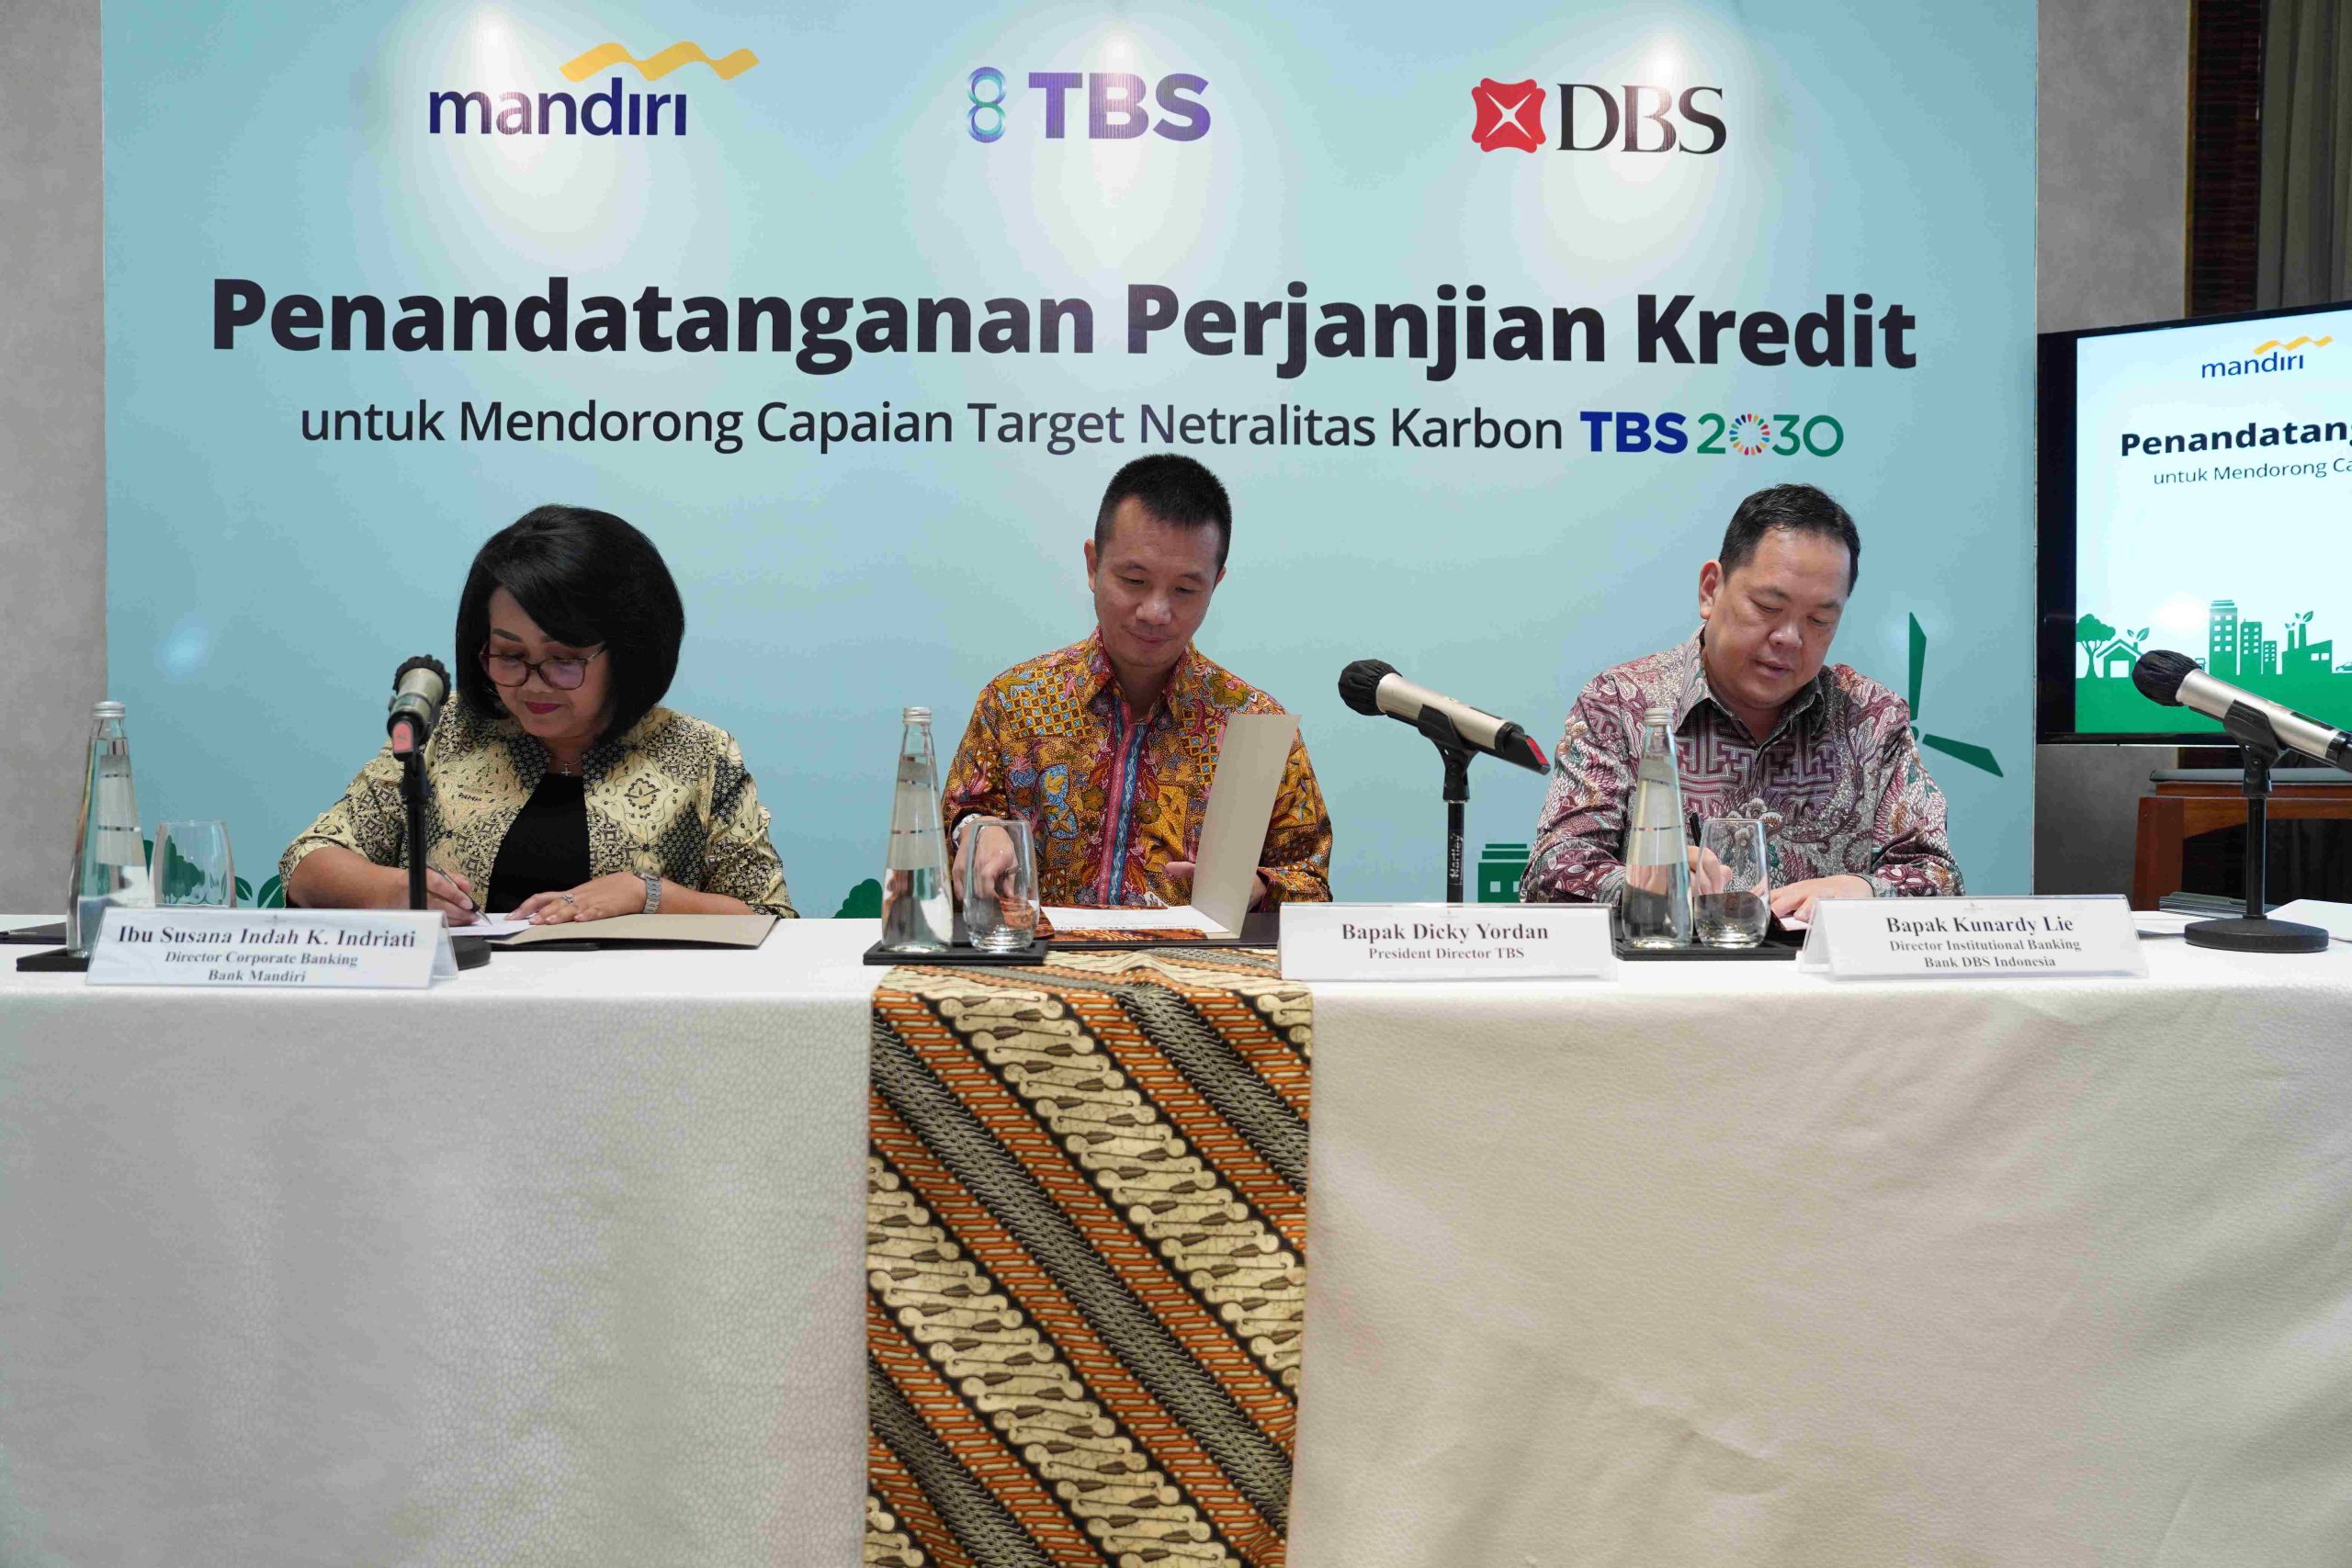 PT Bank Mandiri Tbk dan PT Bank DBS Indonesia terpilih menjadi book runner dan lead arranger pada club deal ini sebagai bentuk dukungan kepada PT TBS Energi Utama Tbk untuk mencapai target netral karbon tahun 2030.